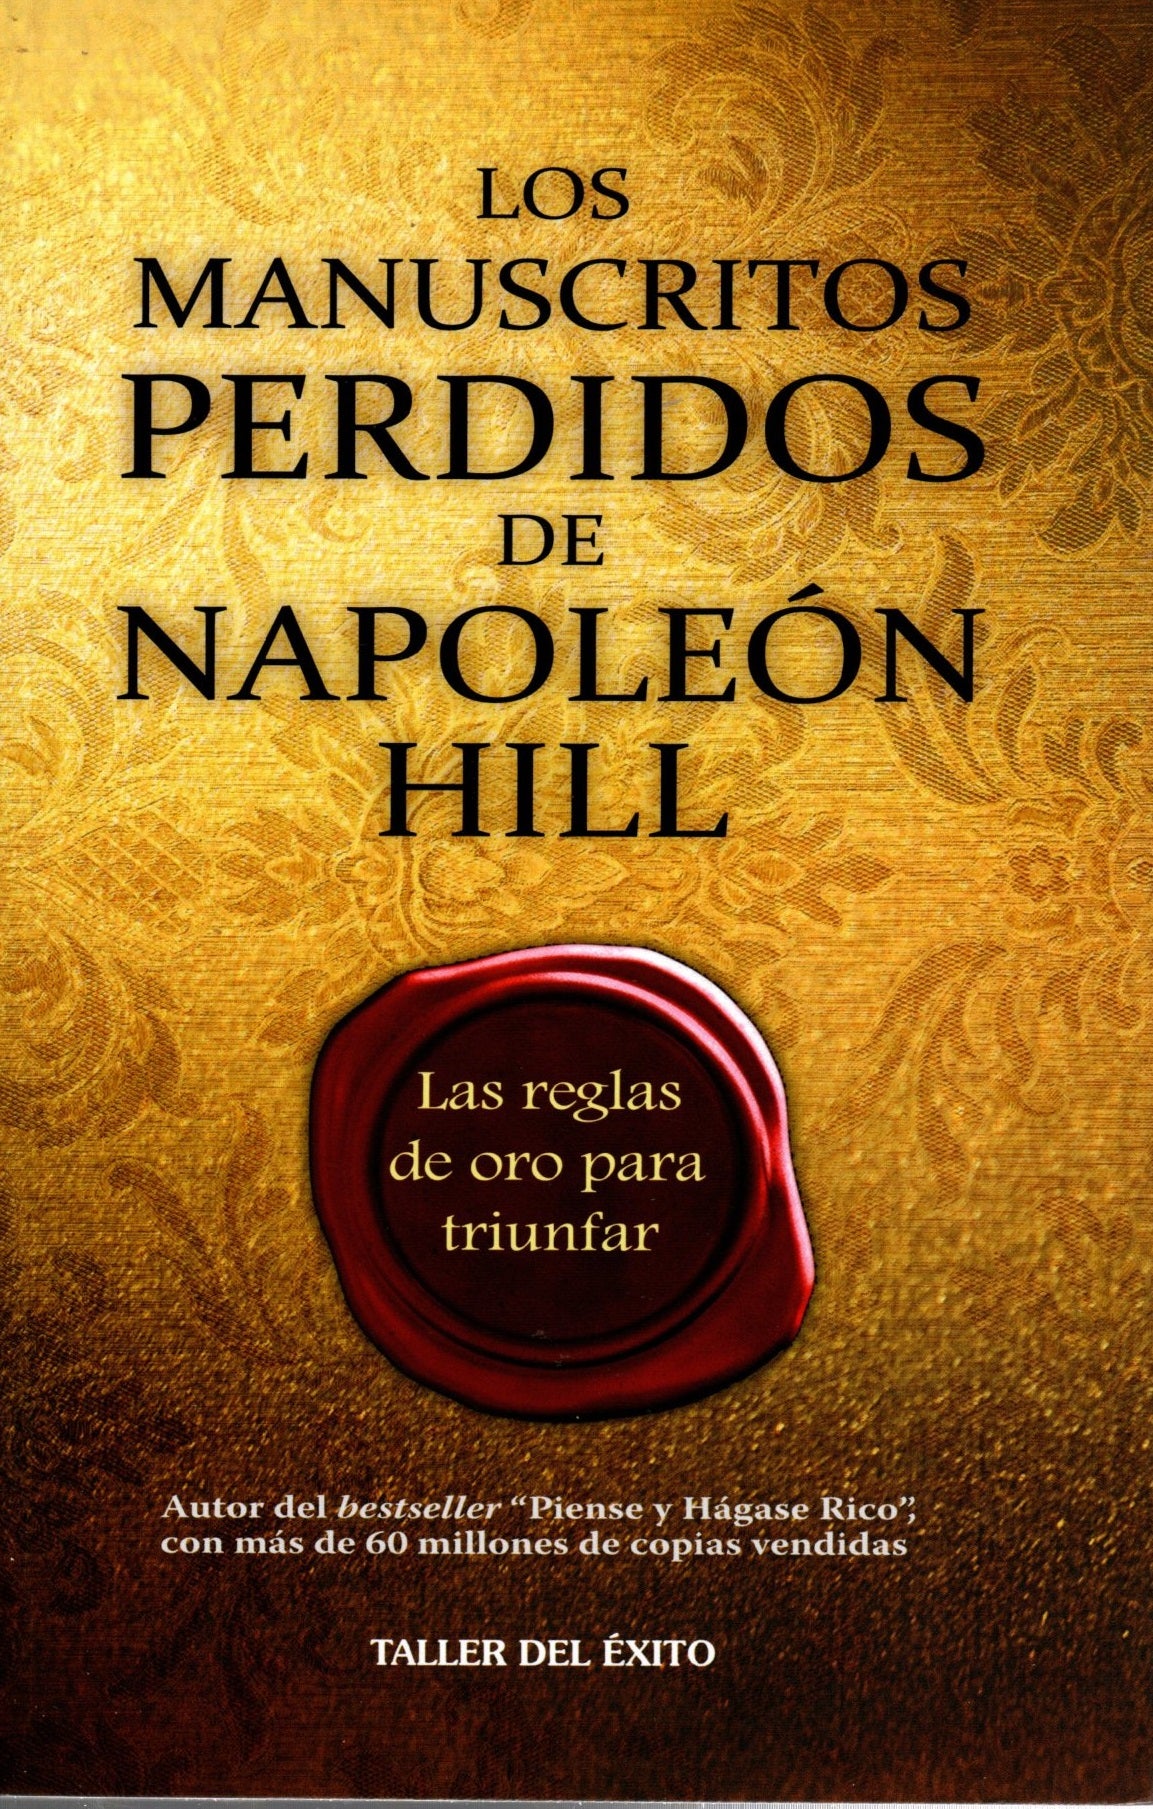 Libro Napoleon Hill - Los manuscritos perdidos de Napoleón Hill